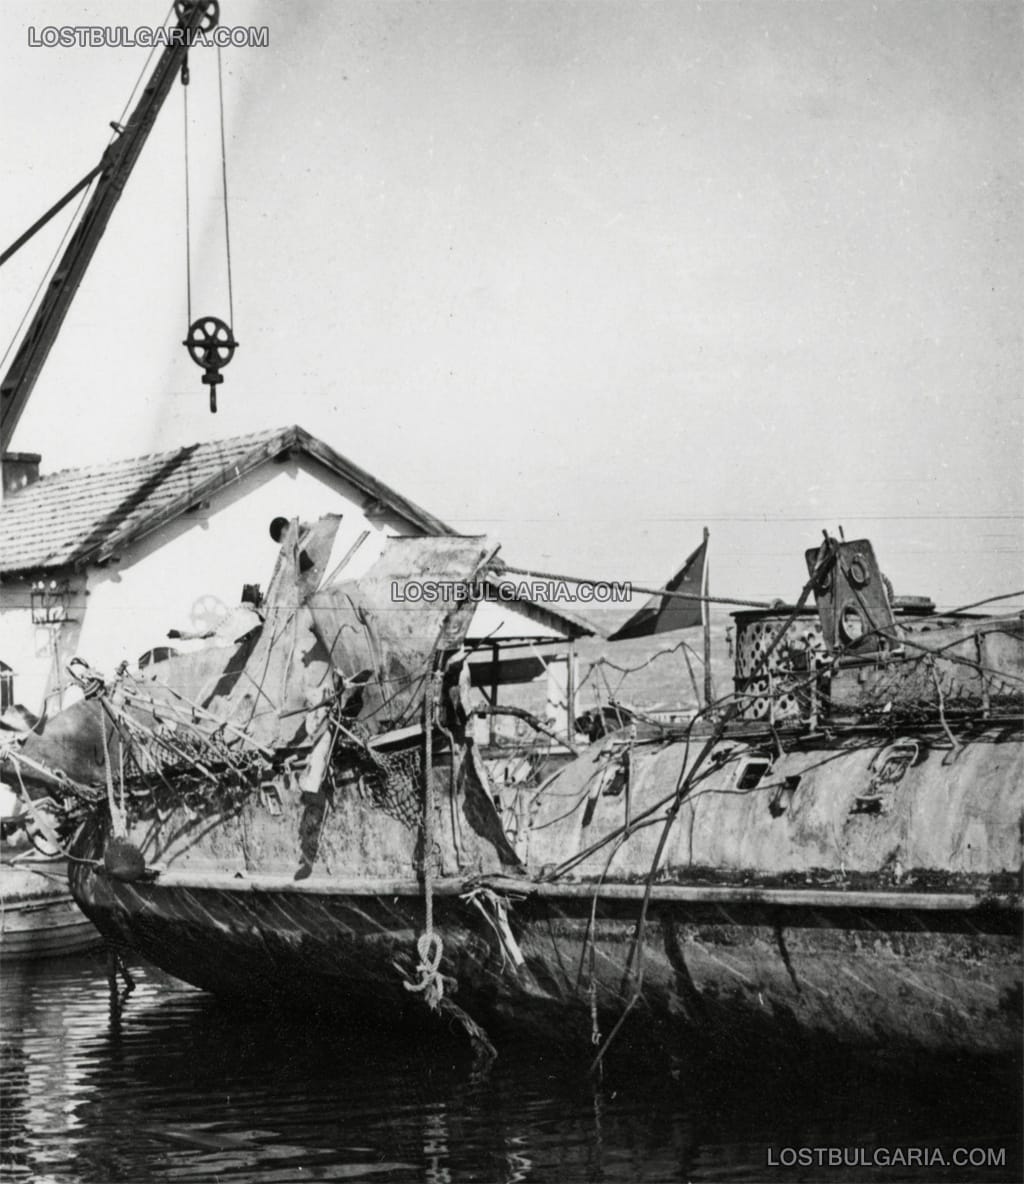 Щети по корпуса на миноносеца "Дръзки", потънал на 15 октомври 1942 г. на кея във Варна, при експлозия на остатъци от неправилно транспортиран каменарски барут